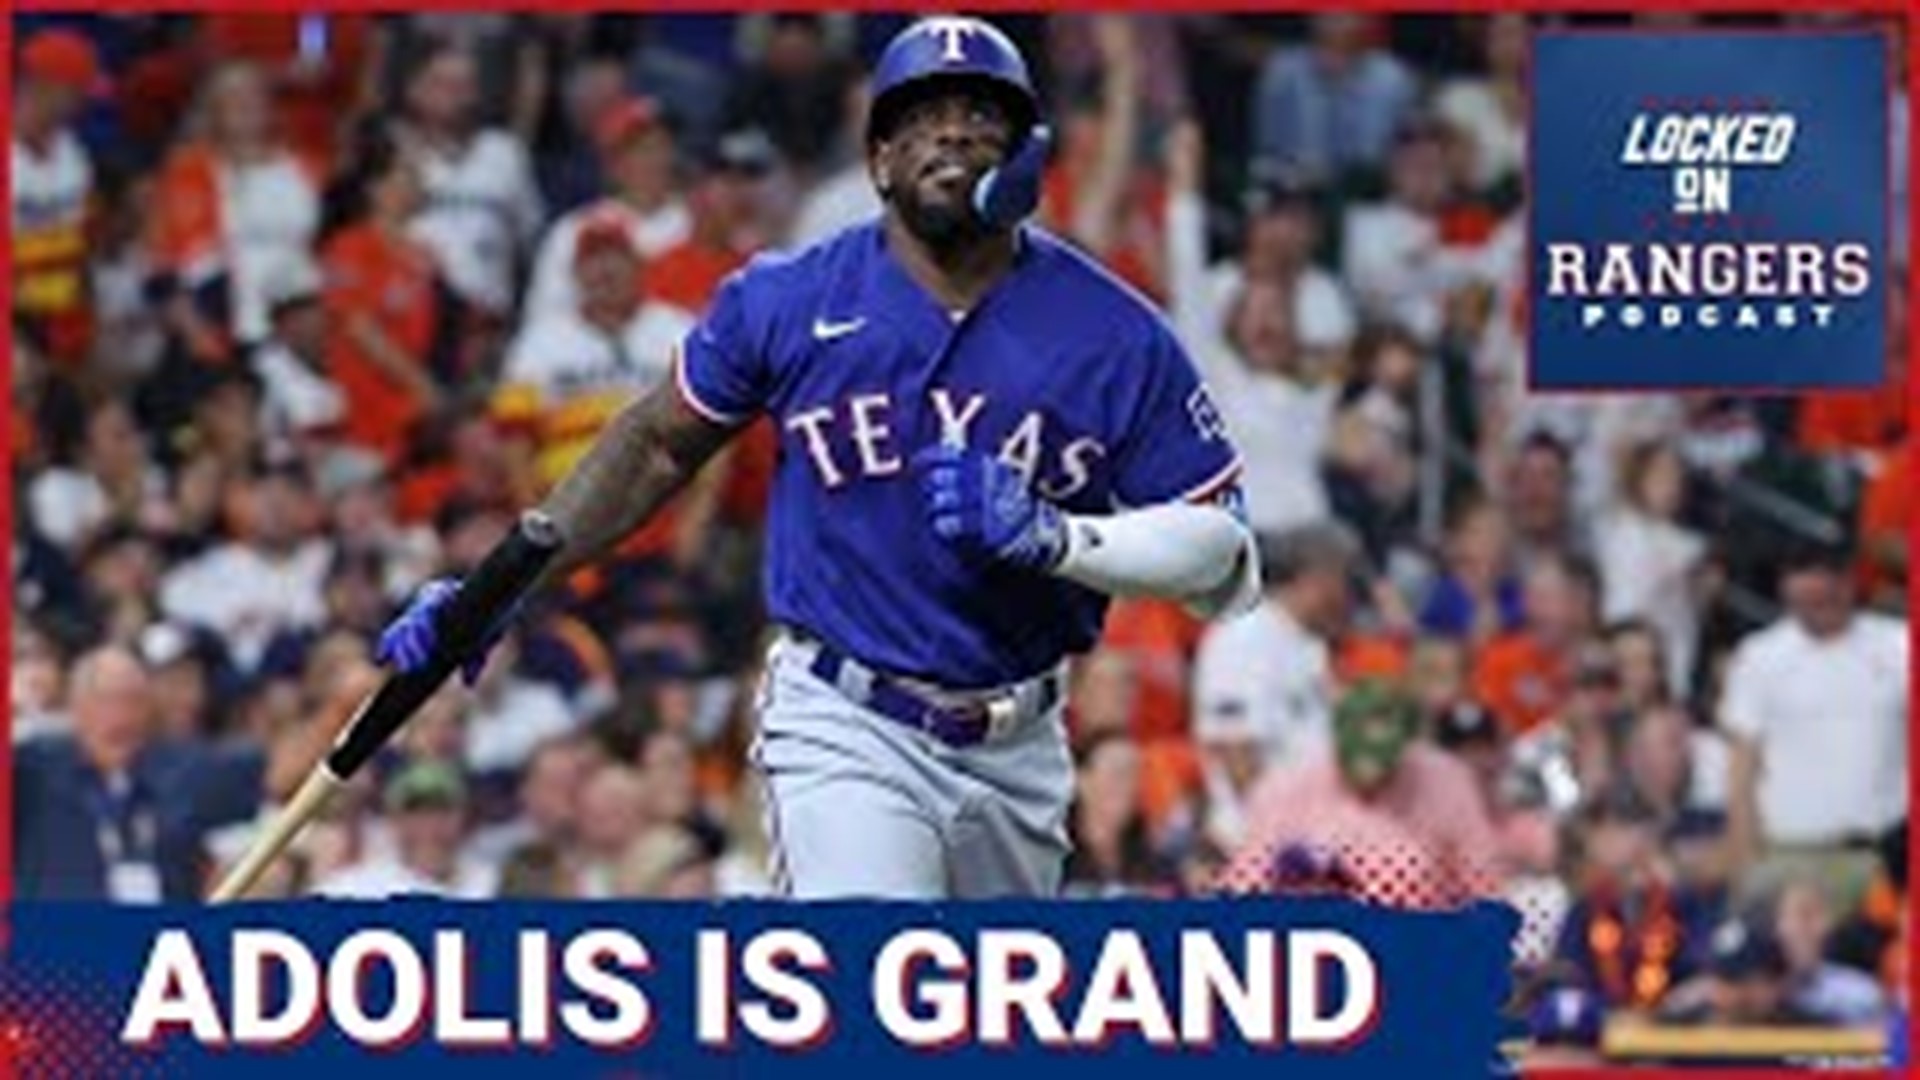 Houston Astros vs. Texas Rangers ALCS Game 6 live updates